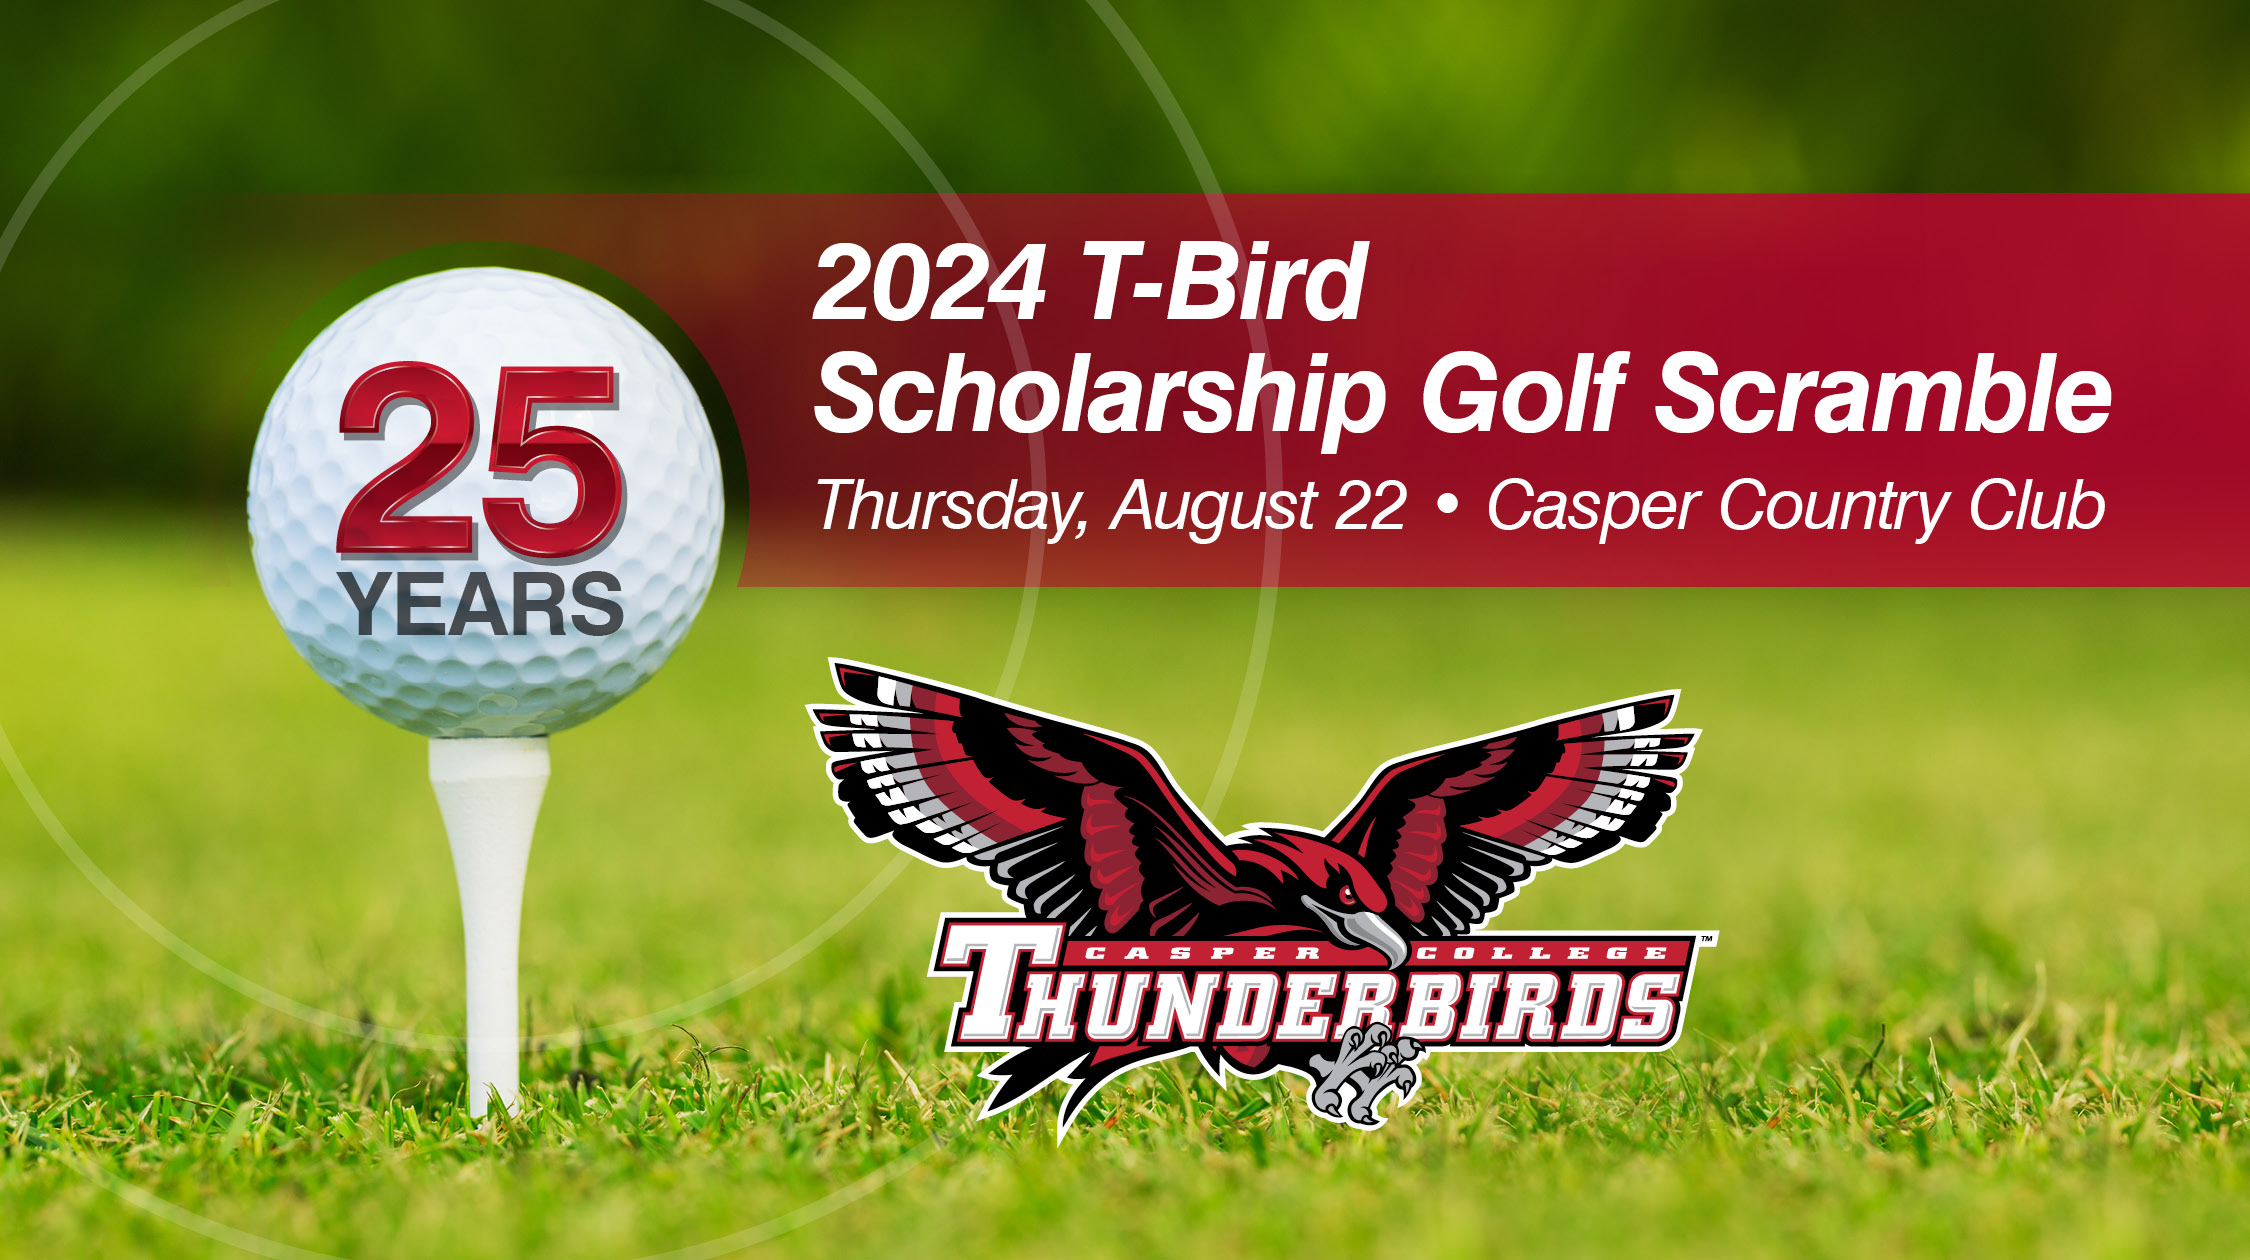 2024 T-Bird Golf Scramble is Thursday, August 22.